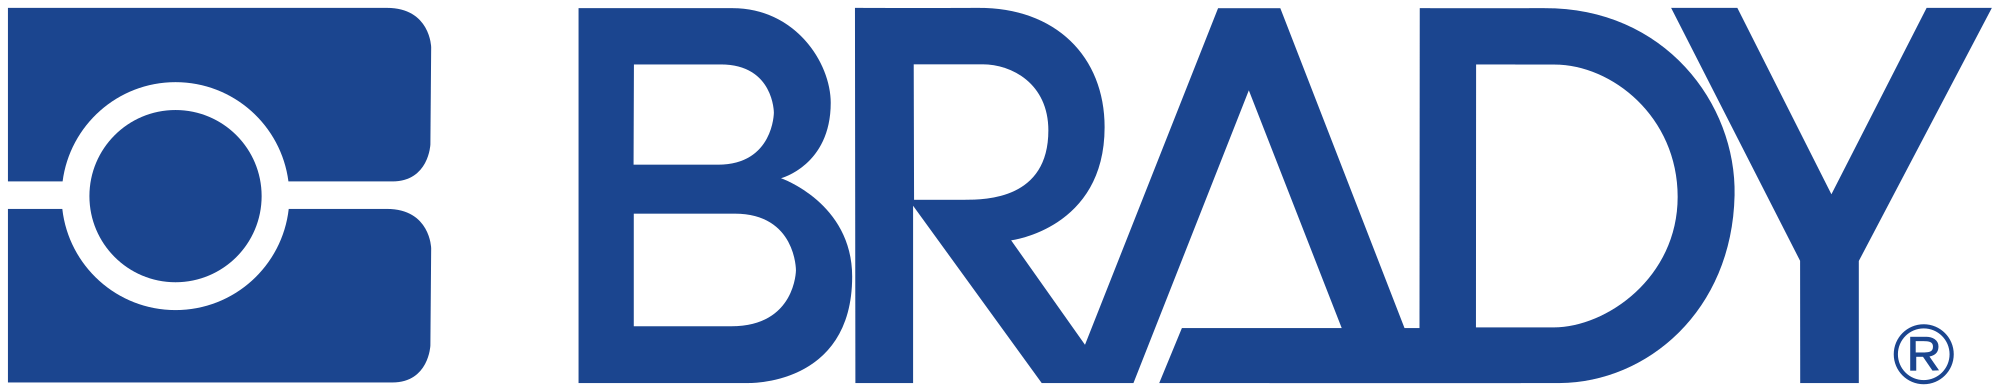 Brady Corporation Logo